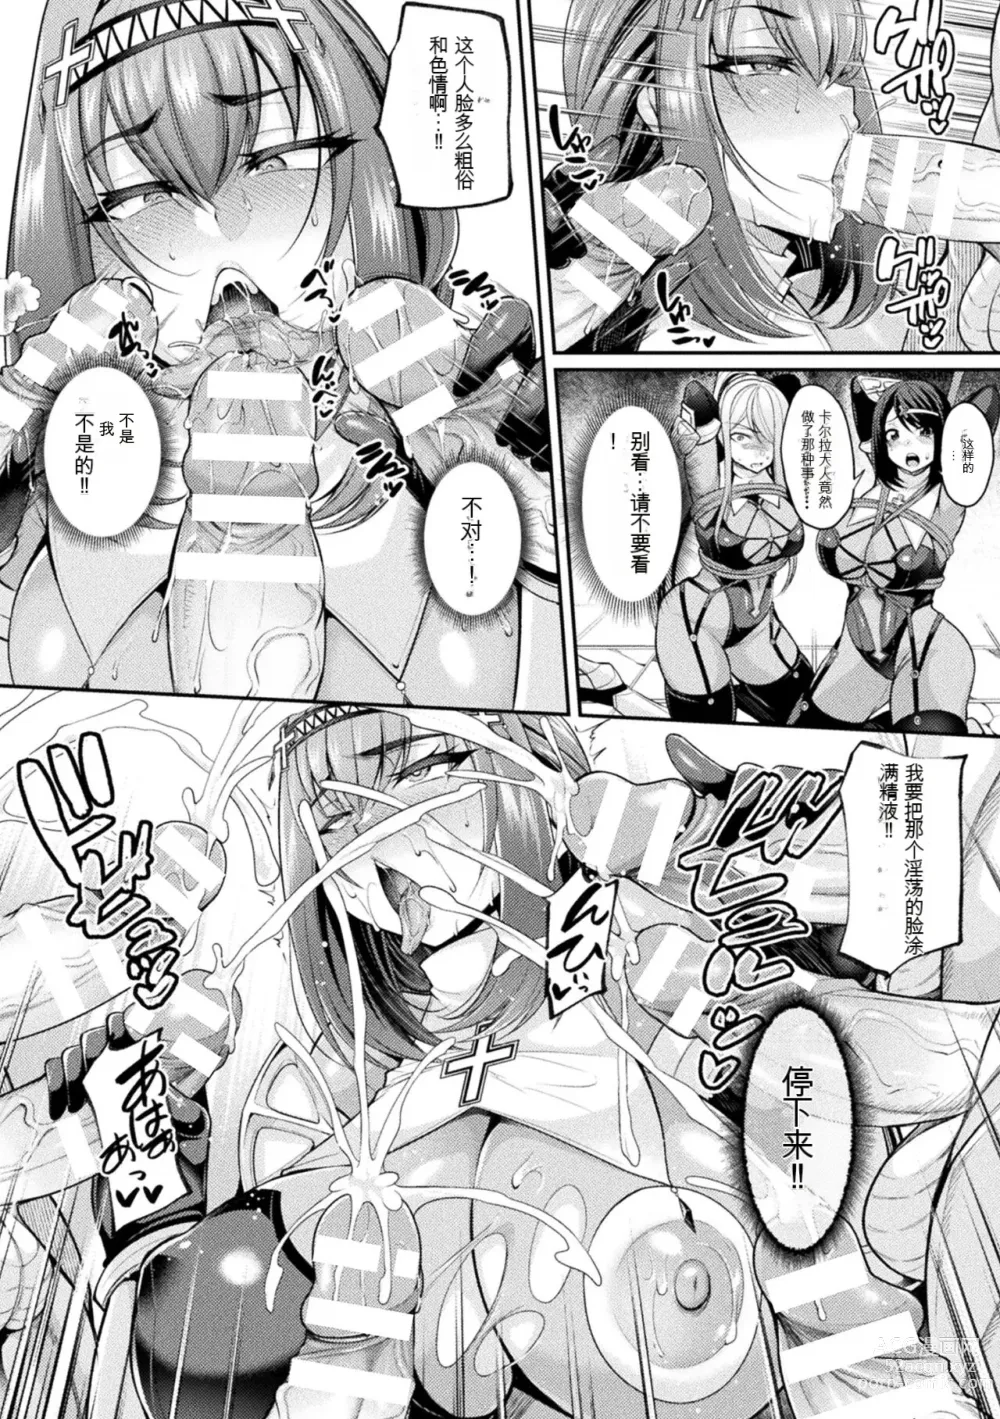 Page 14 of manga Taima Kishi Carla ~A knight fallen in lust~